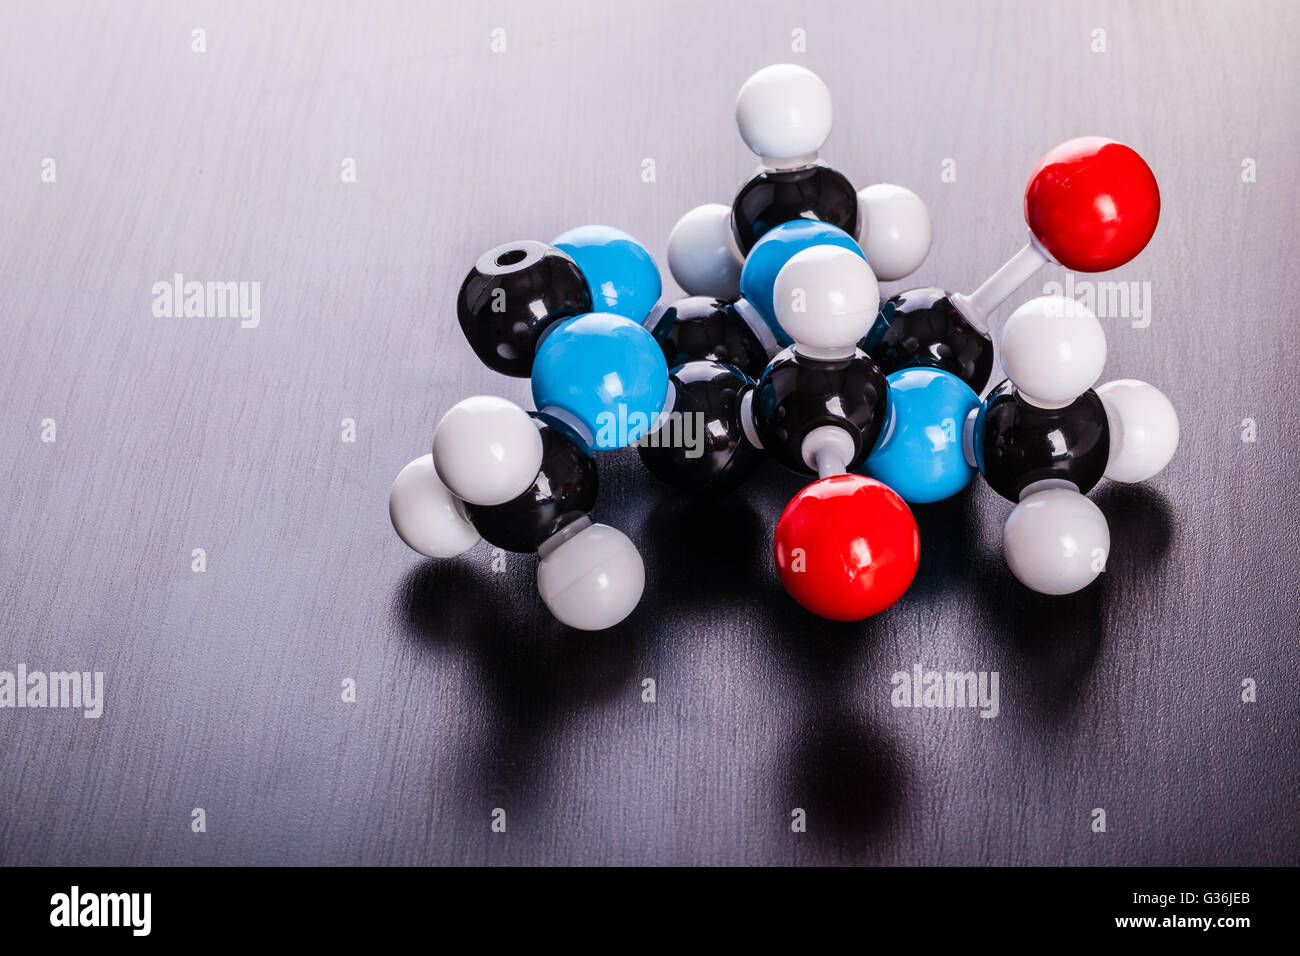 Un modèle de structure moléculaire chimique de la caféine sur la surface en bois Banque D'Images